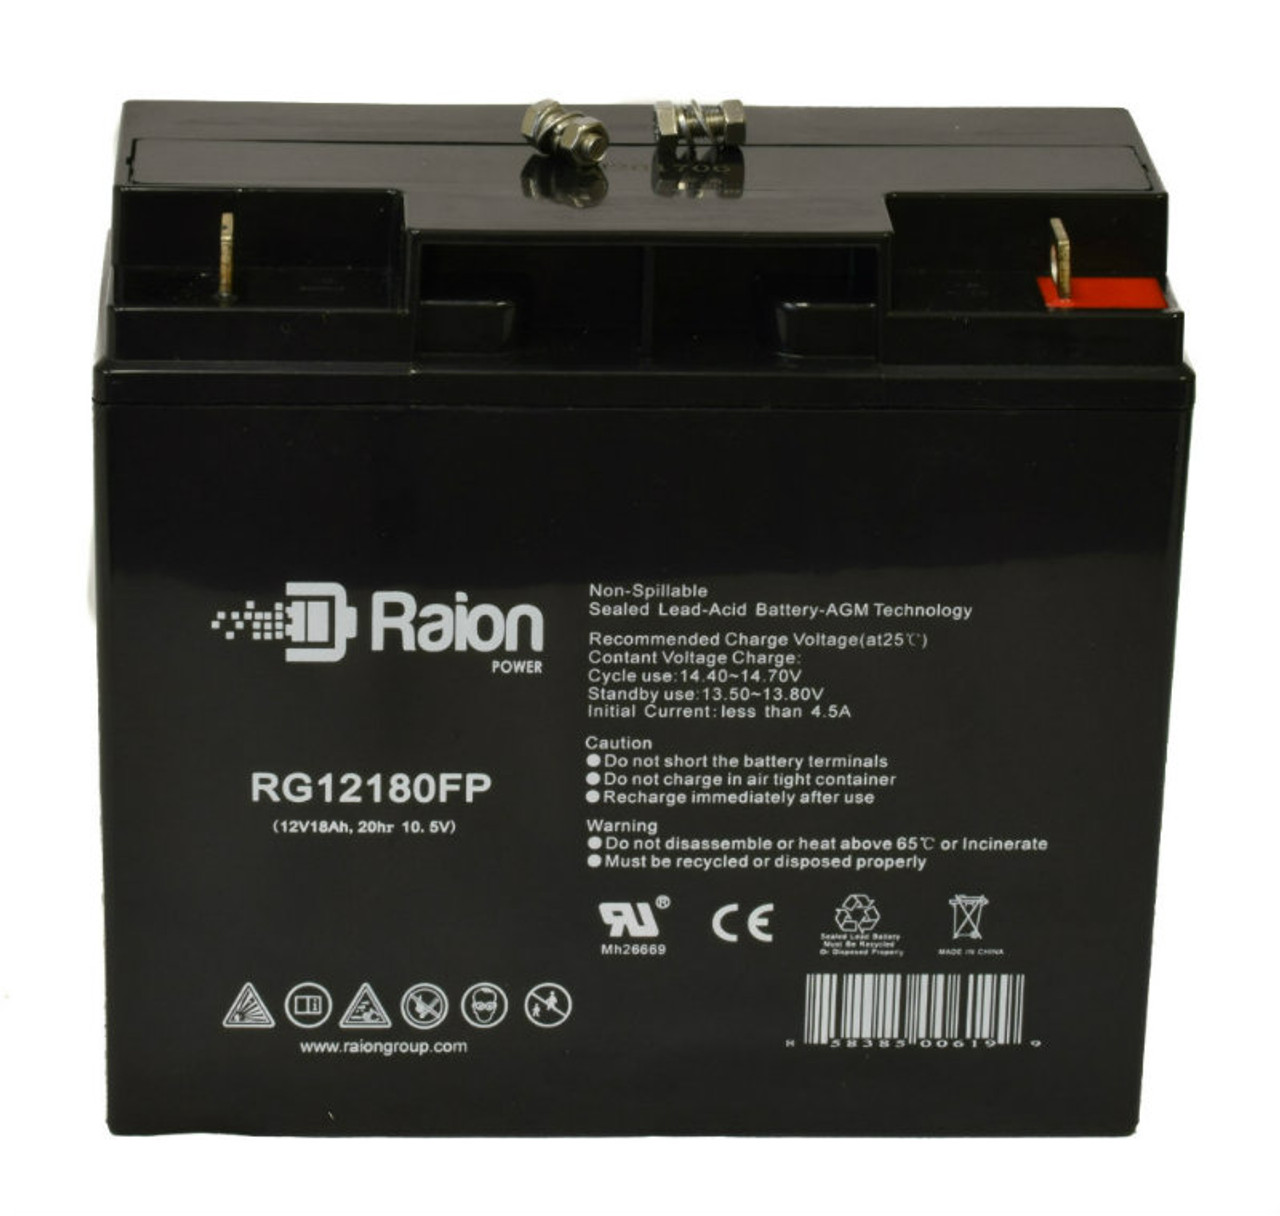 Raion Power RG12180FP 12V 18Ah Lead Acid Battery for Wing ES 17-12vds